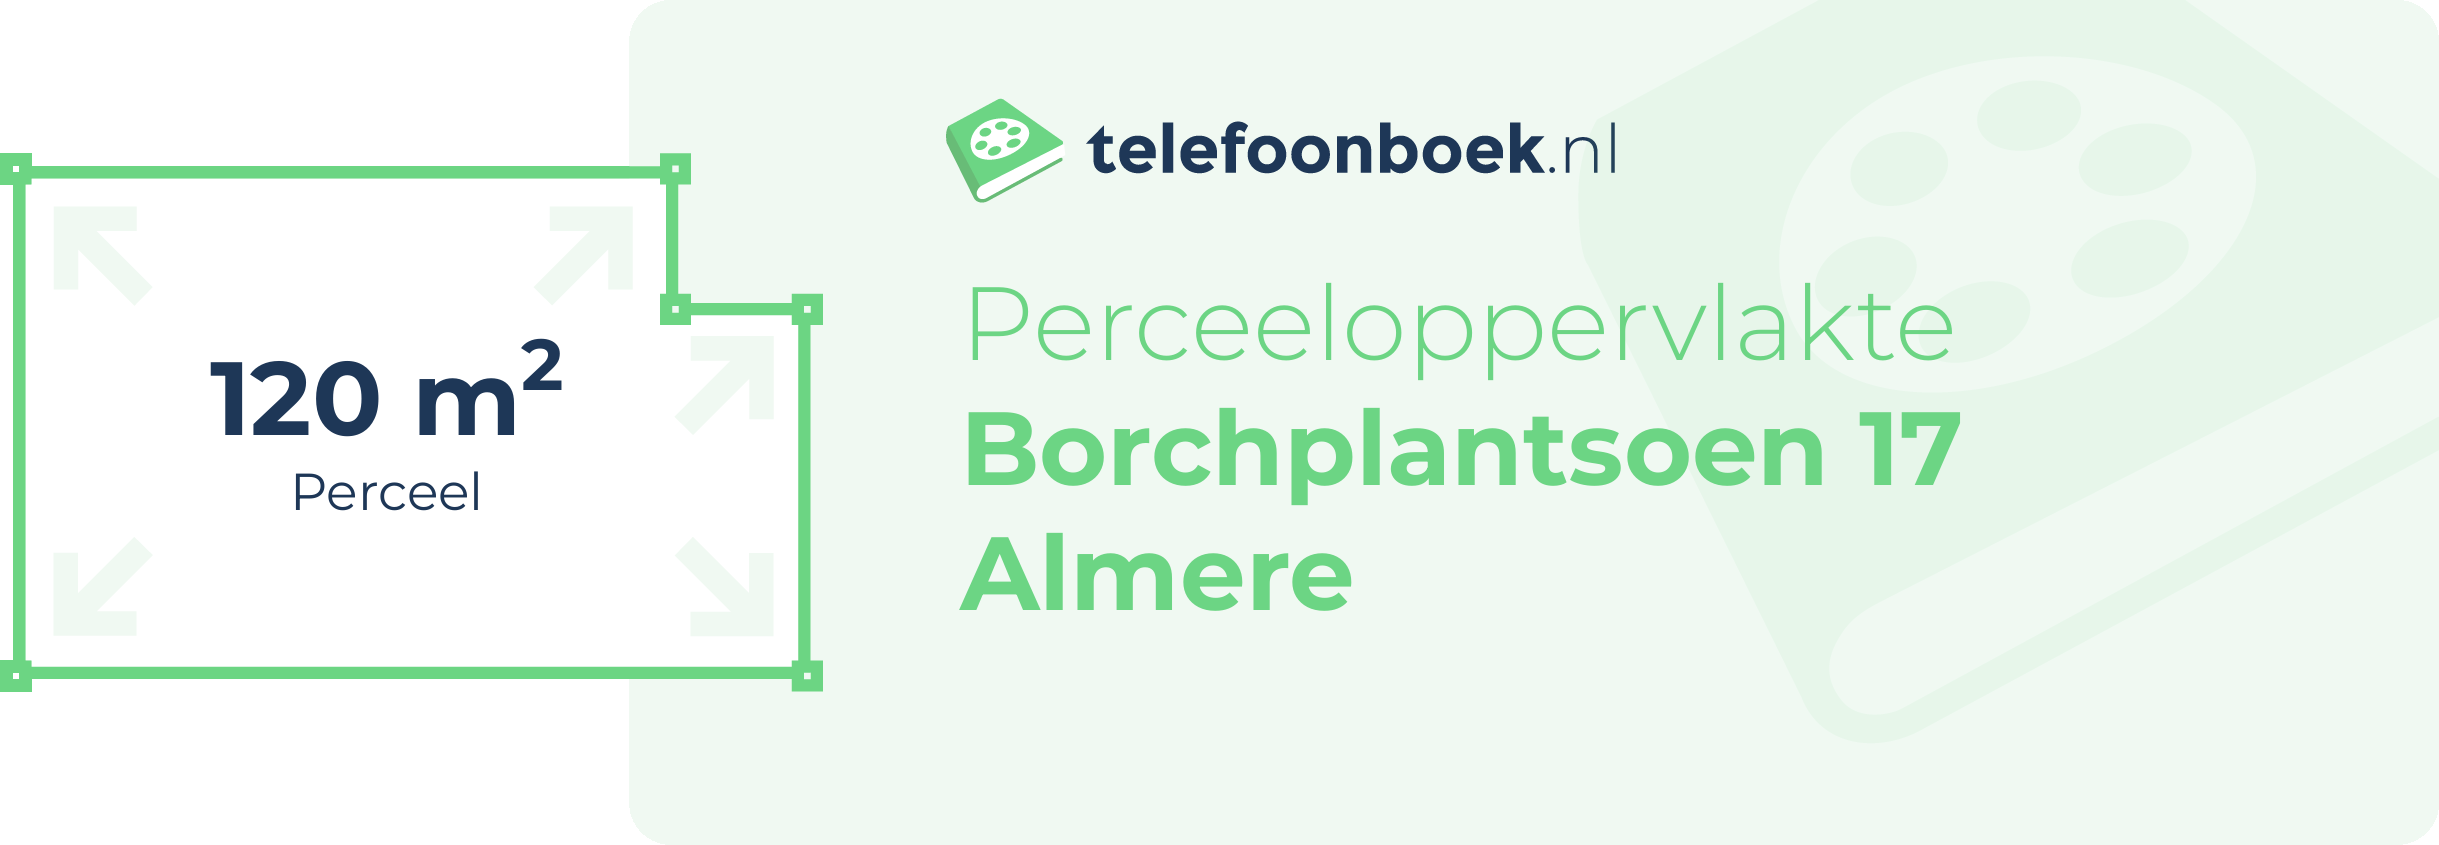 Perceeloppervlakte Borchplantsoen 17 Almere